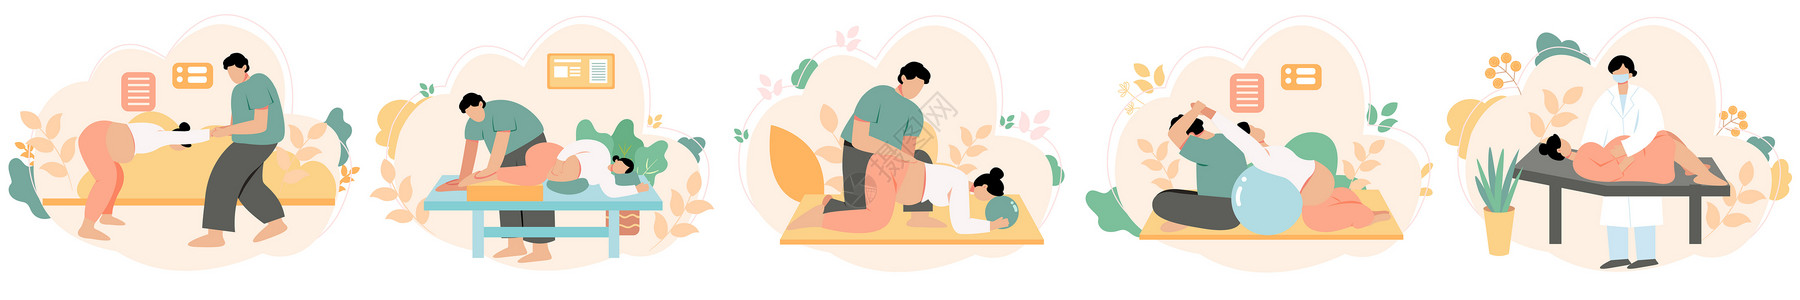 孕期血糖孕妇产前护理训练孕期锻炼svg矢量插画元素插画